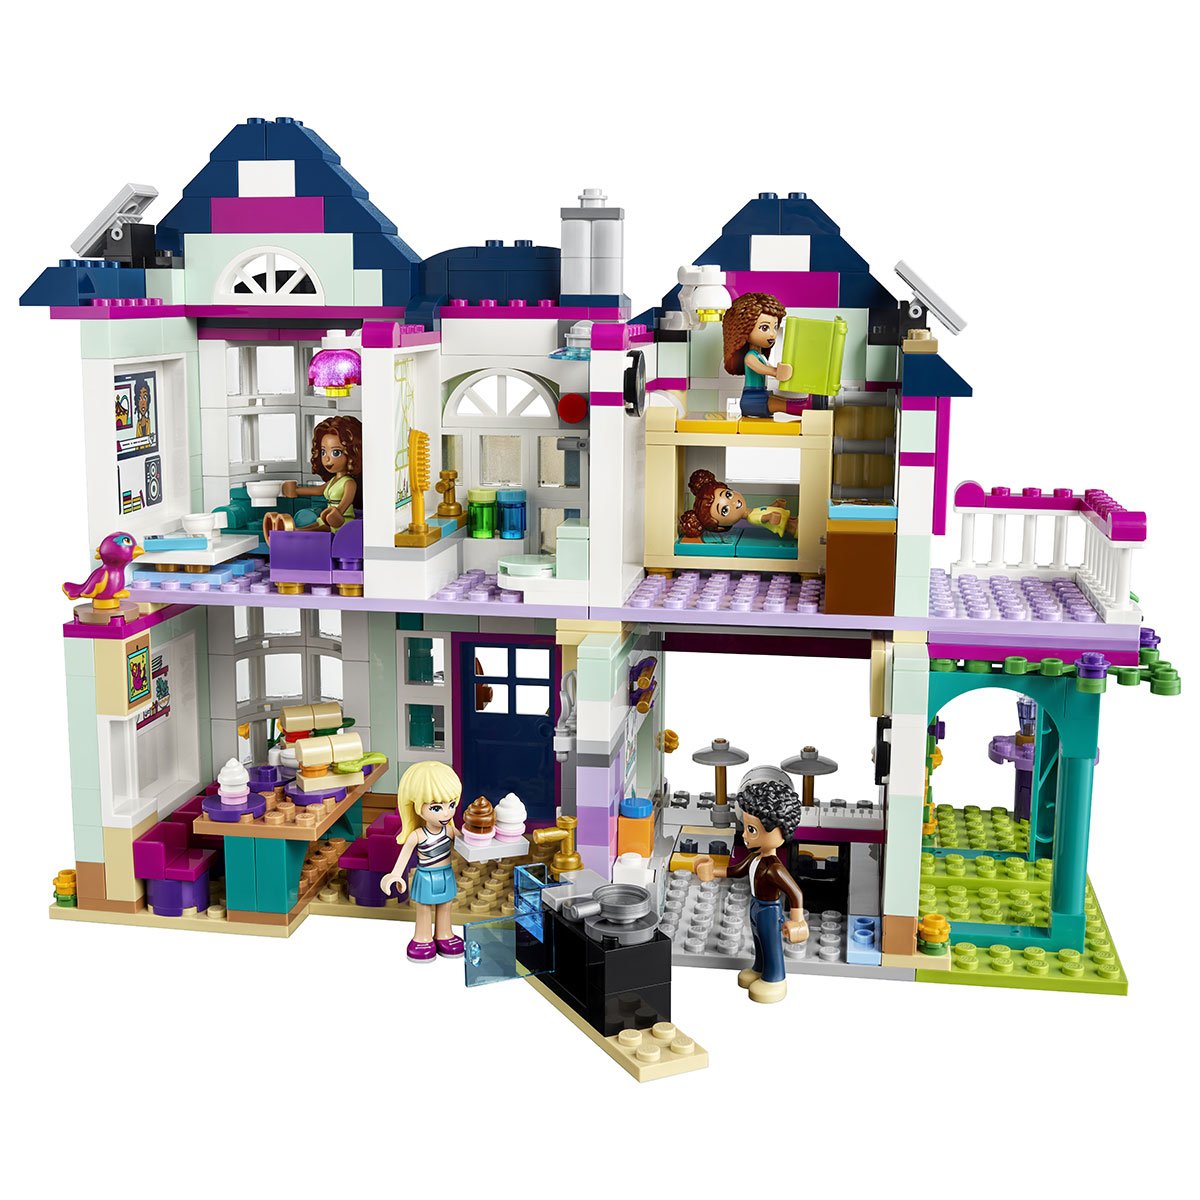 Cette maison en Lego bluffera tous ceux qui ont une âme d'enfant - Elle